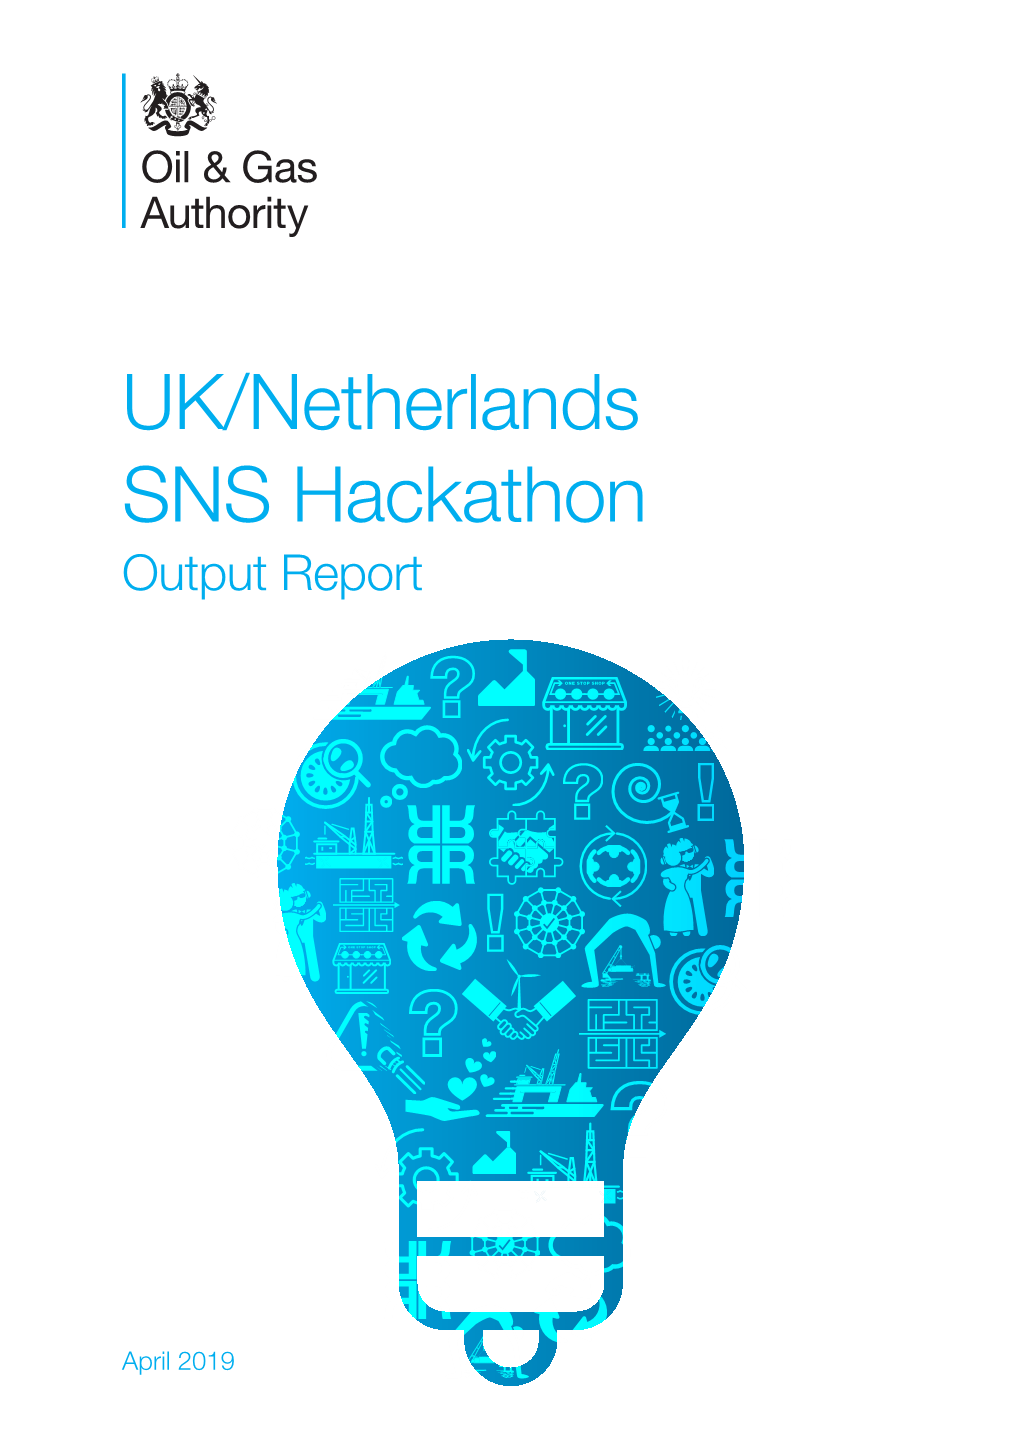 UK/Netherlands SNS Hackathon Output Report